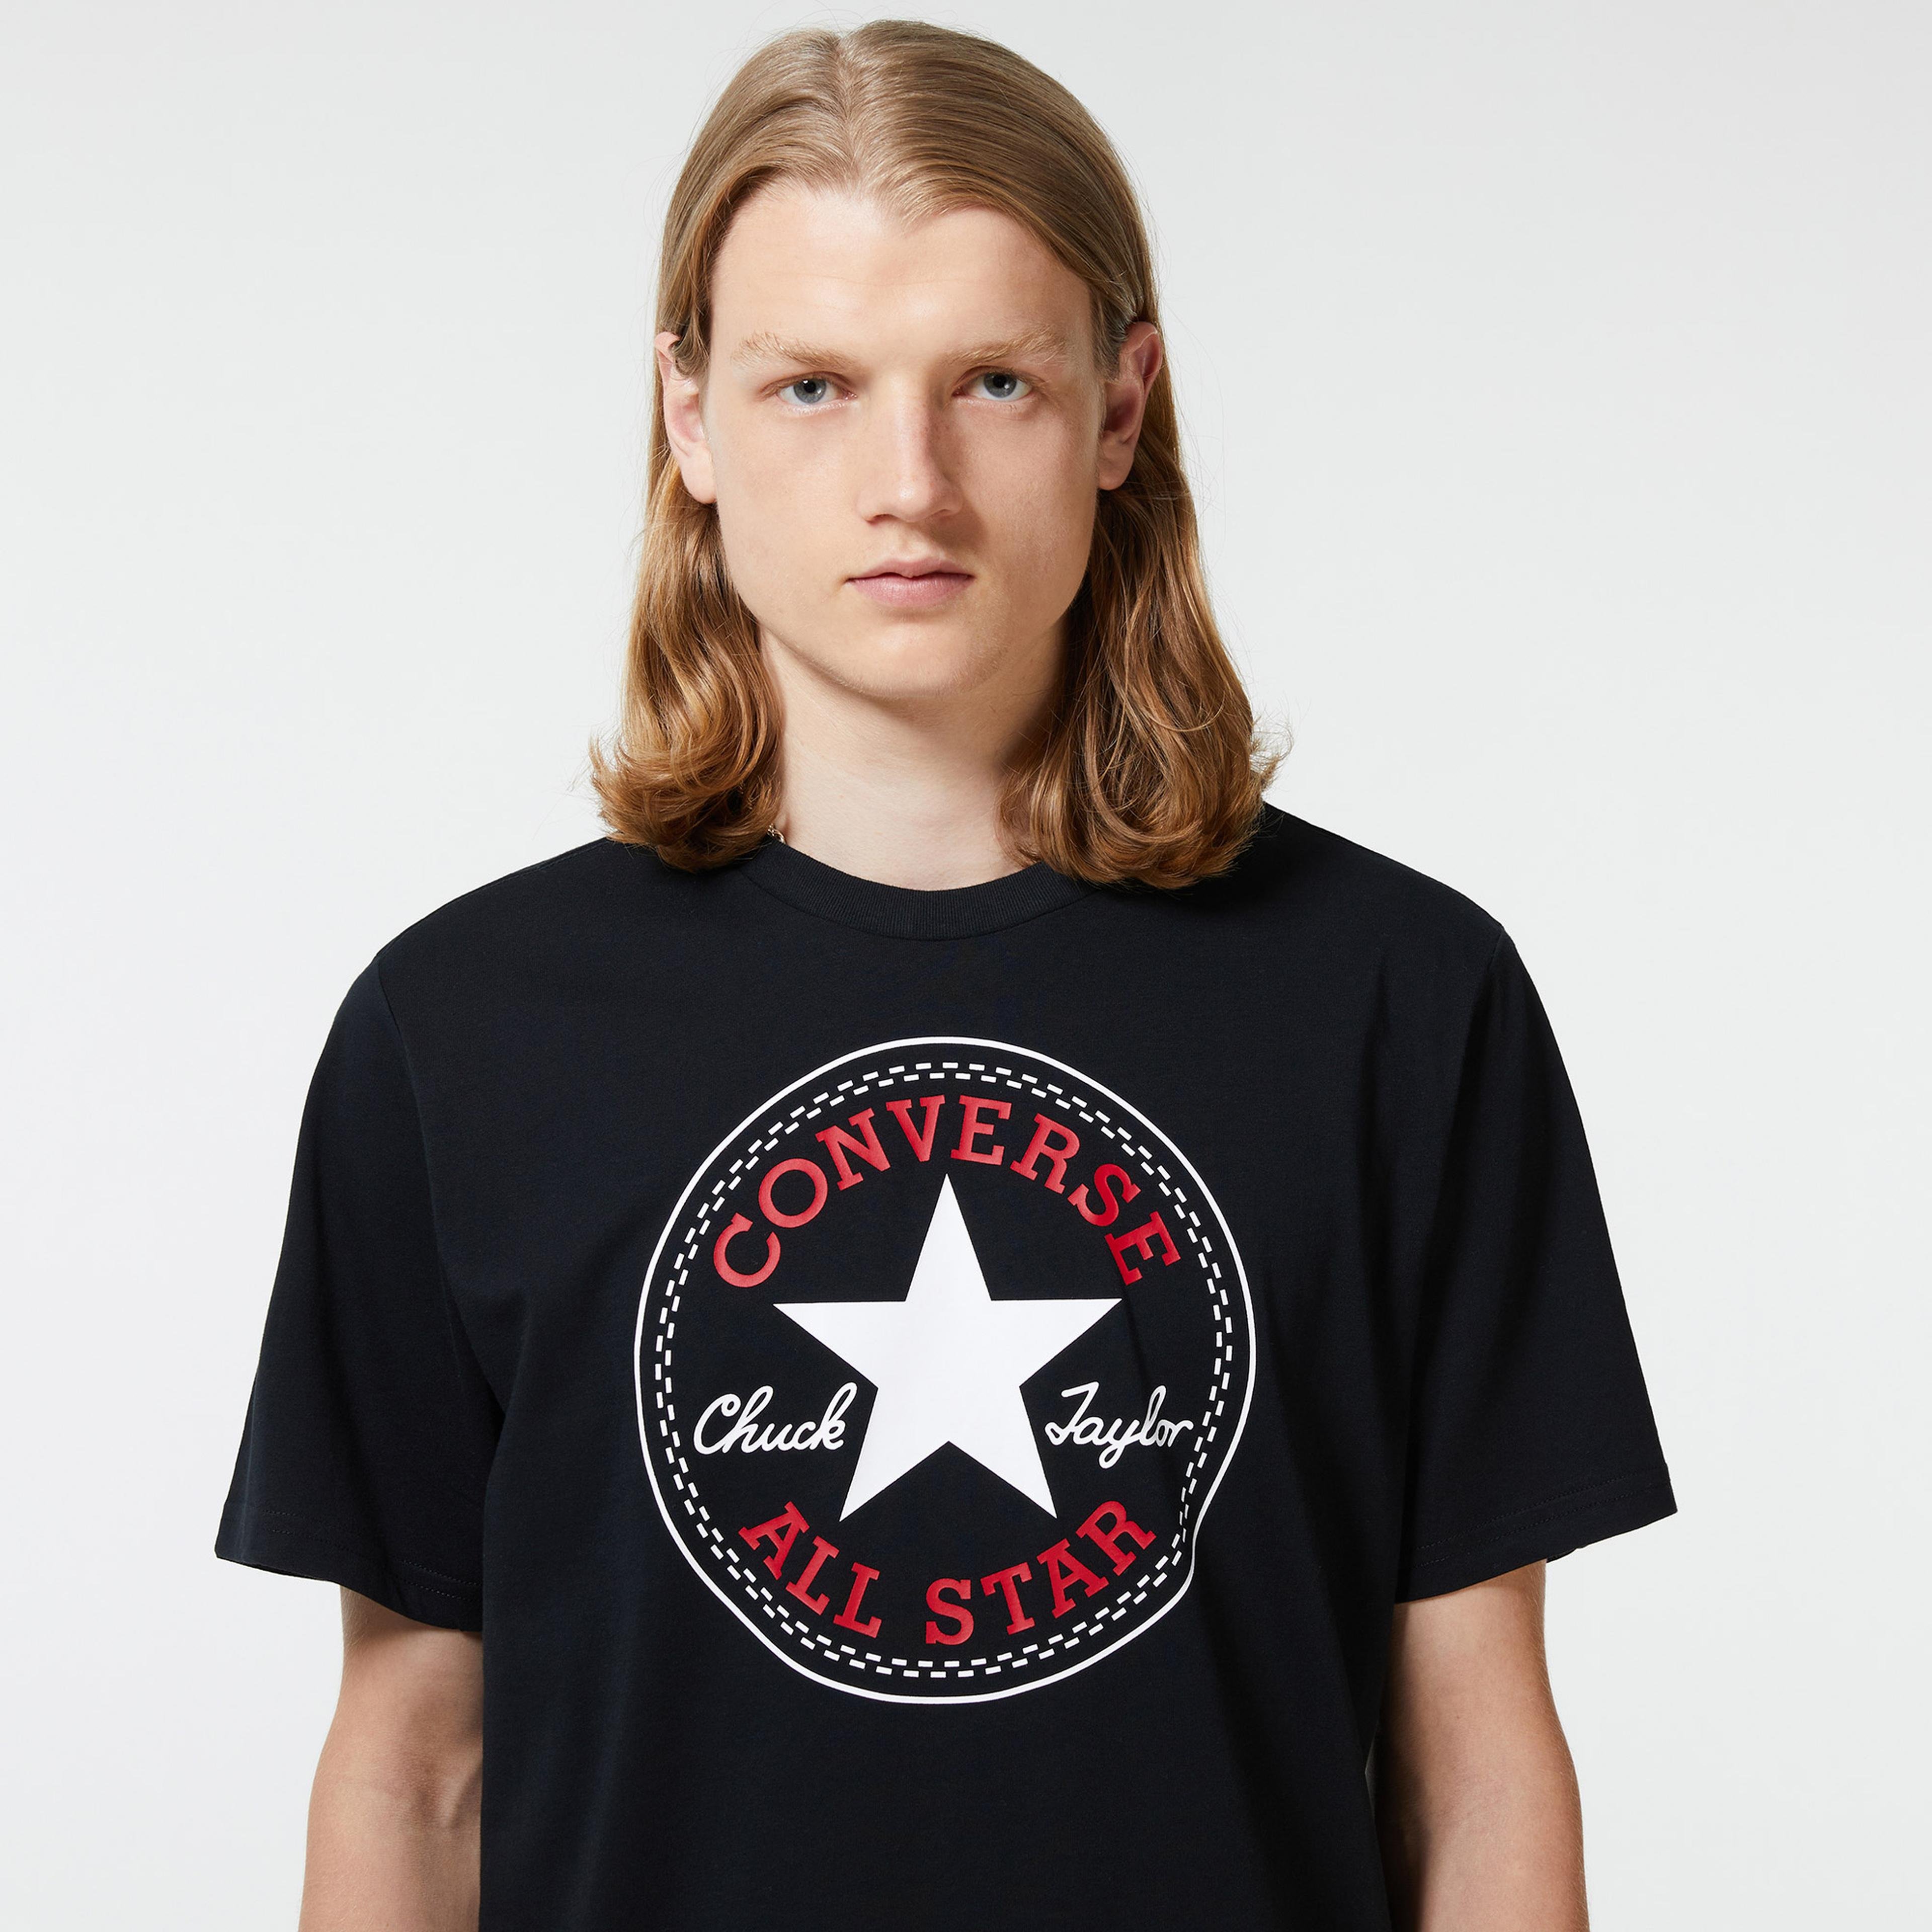 Converse Nova Chuck Patch Erkek Siyah T-Shirt